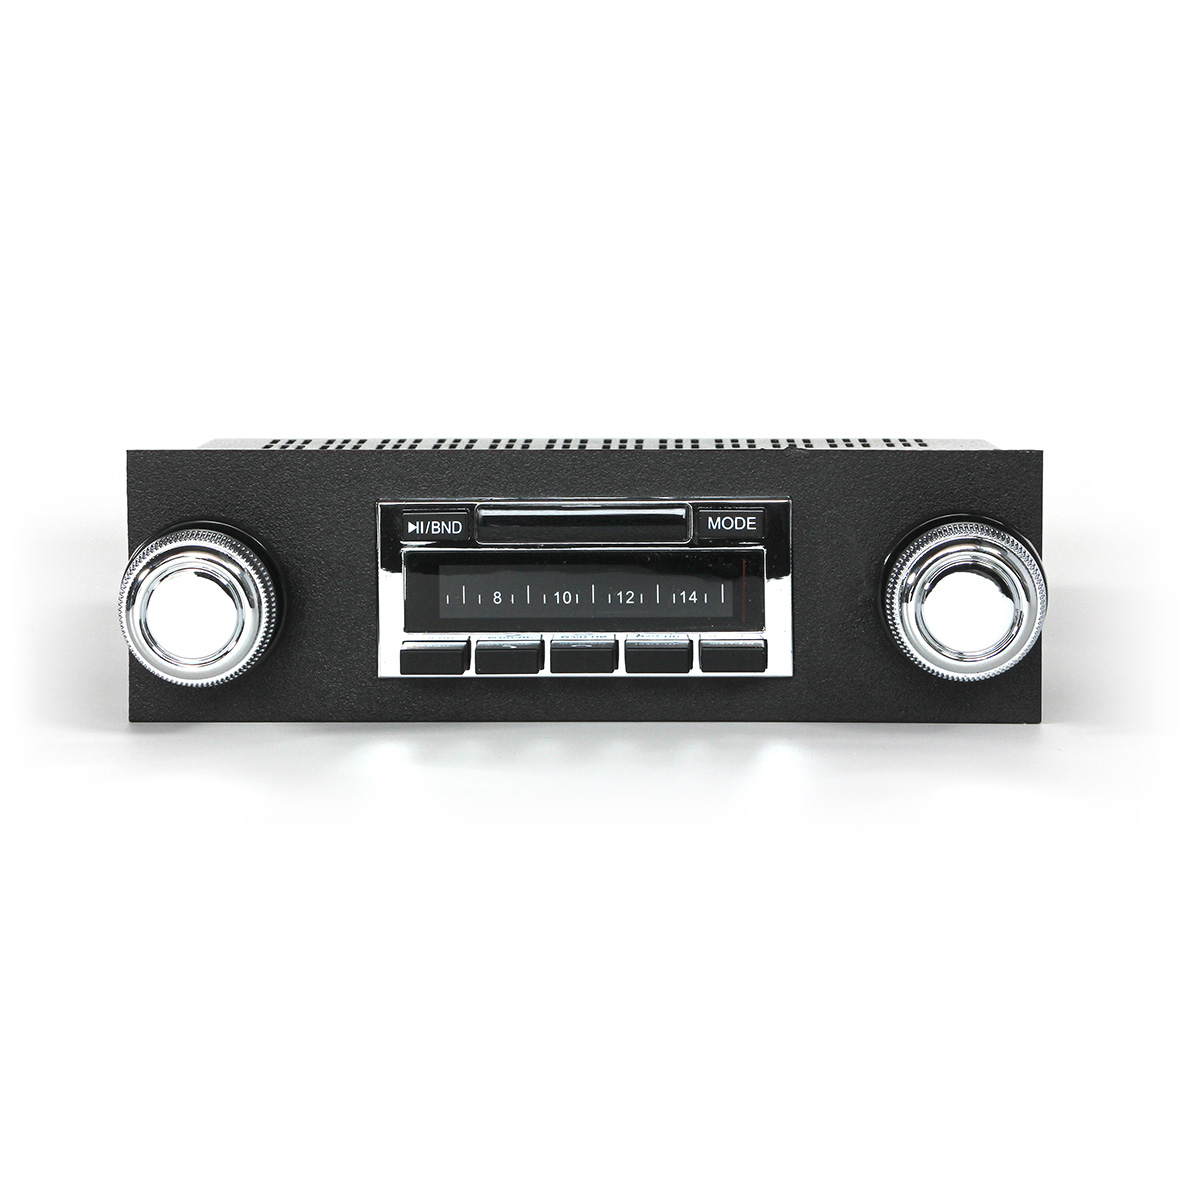 NEW USA-630 II* 300 watt '47-53 GMC Truck AM FM Stereo Radio iPod USB Aux inputs 